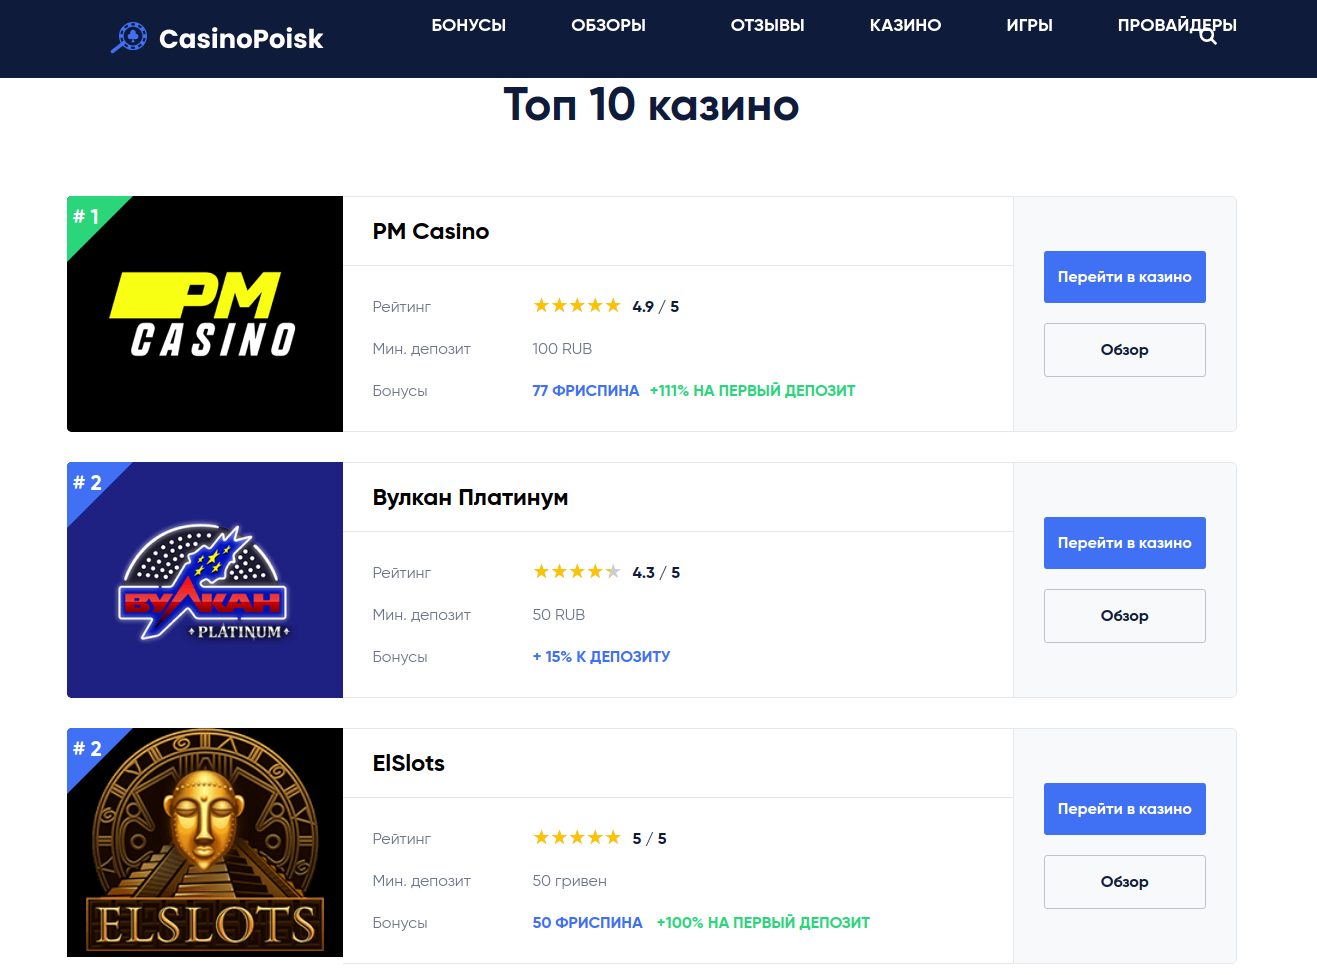 10 казино онлайн россии top casinorating com скачать симулятор казино вулкан